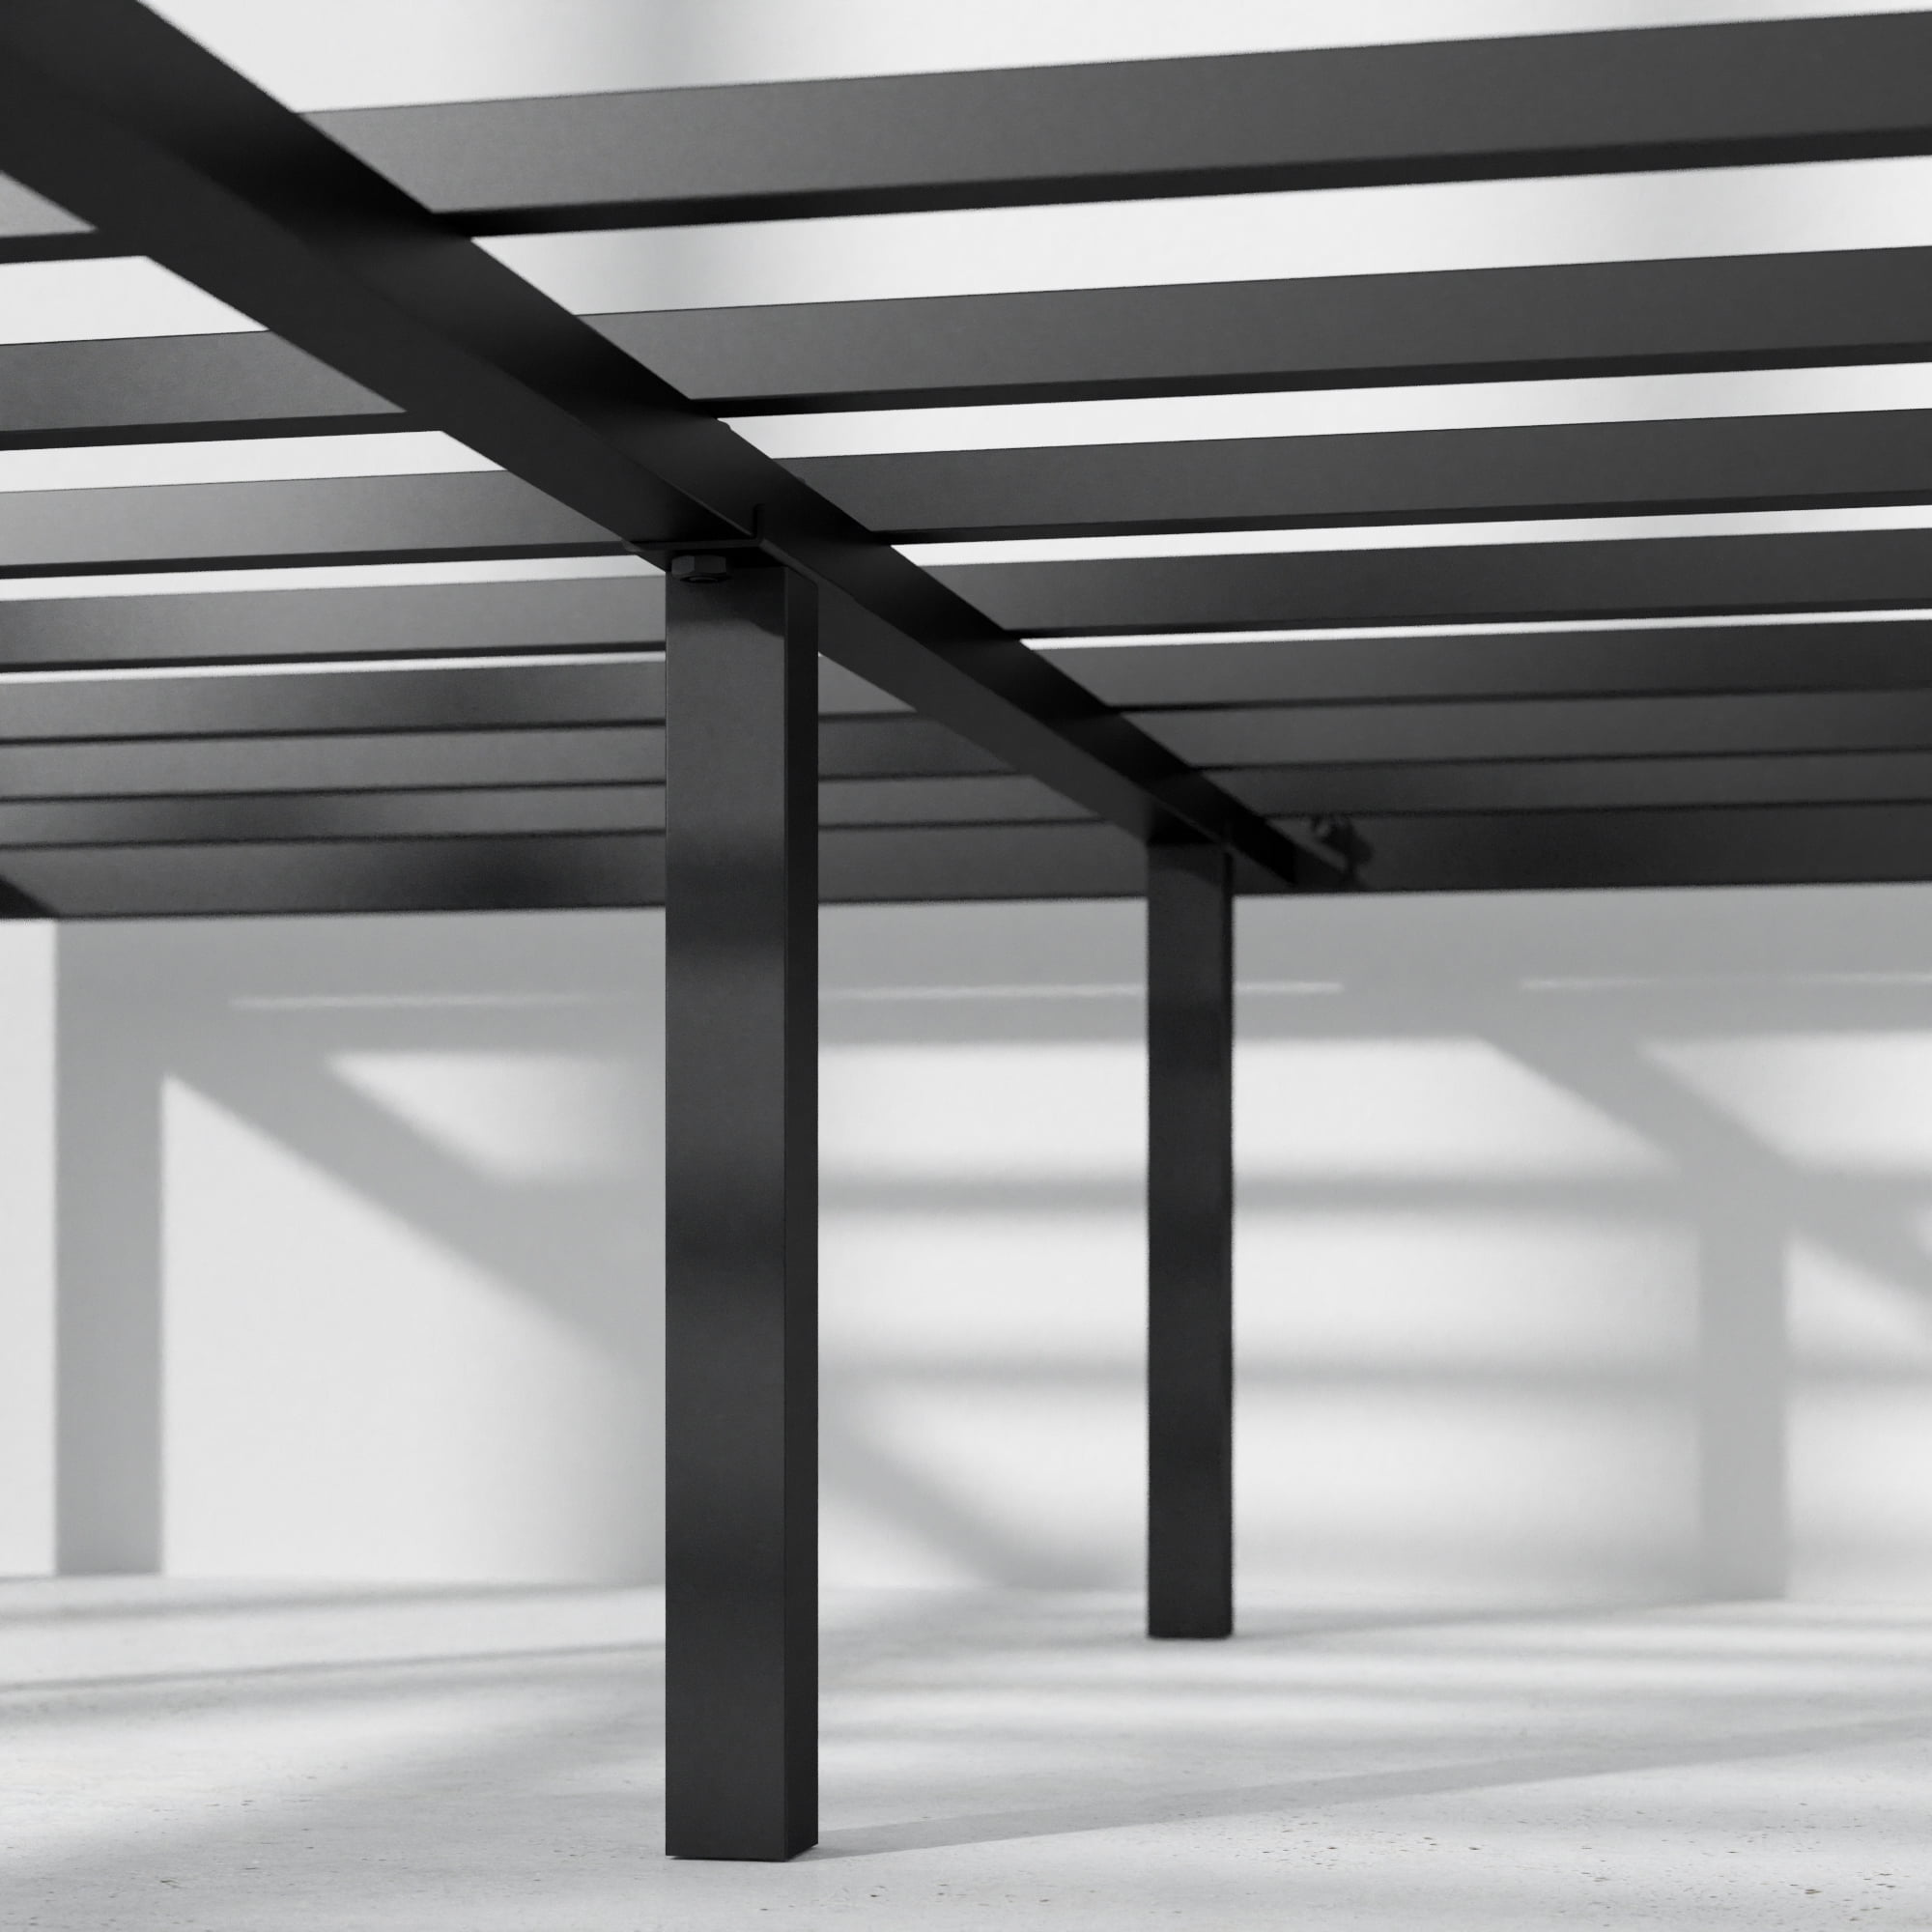 Mattress Foundation Queen Zinus Van 16 Inch Metal Platform Bed Frame with Steel Slat Support 